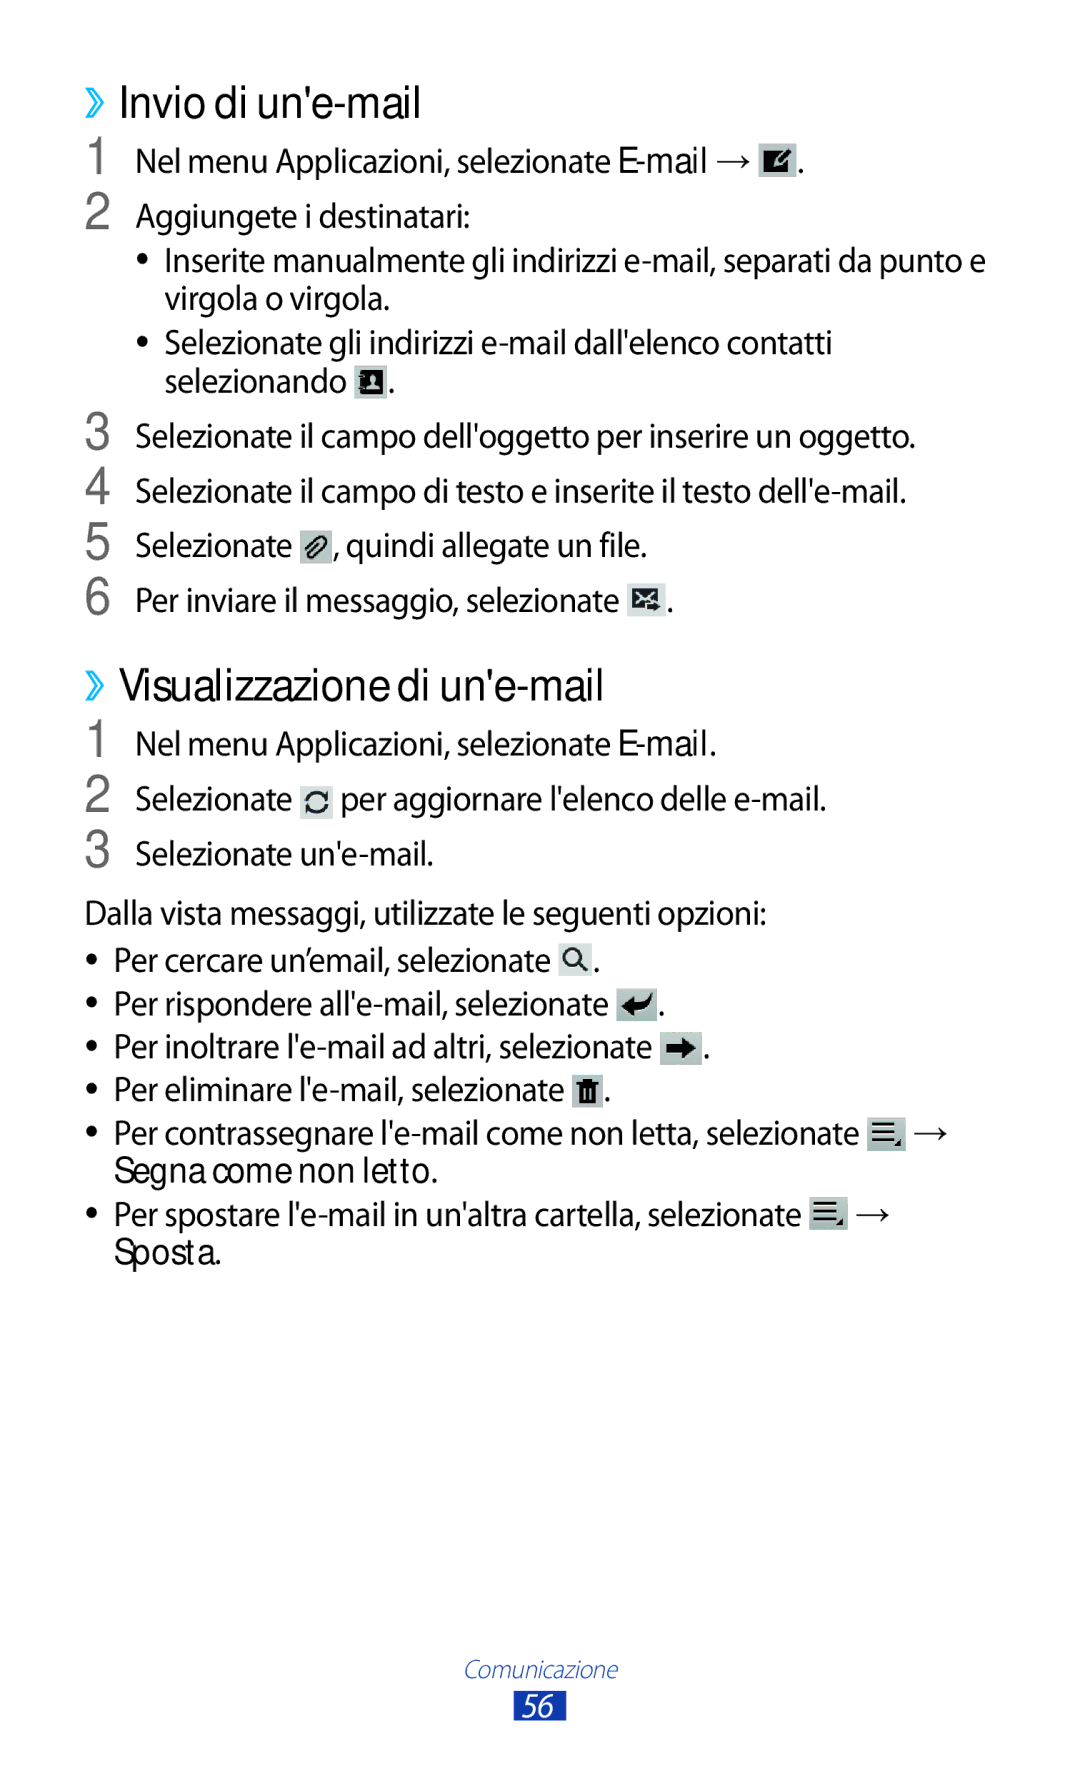 Samsung GT-P7500FKDOMN ››Visualizzazione di une-mail, Per cercare un’email, selezionate, Segna come non letto, Sposta 